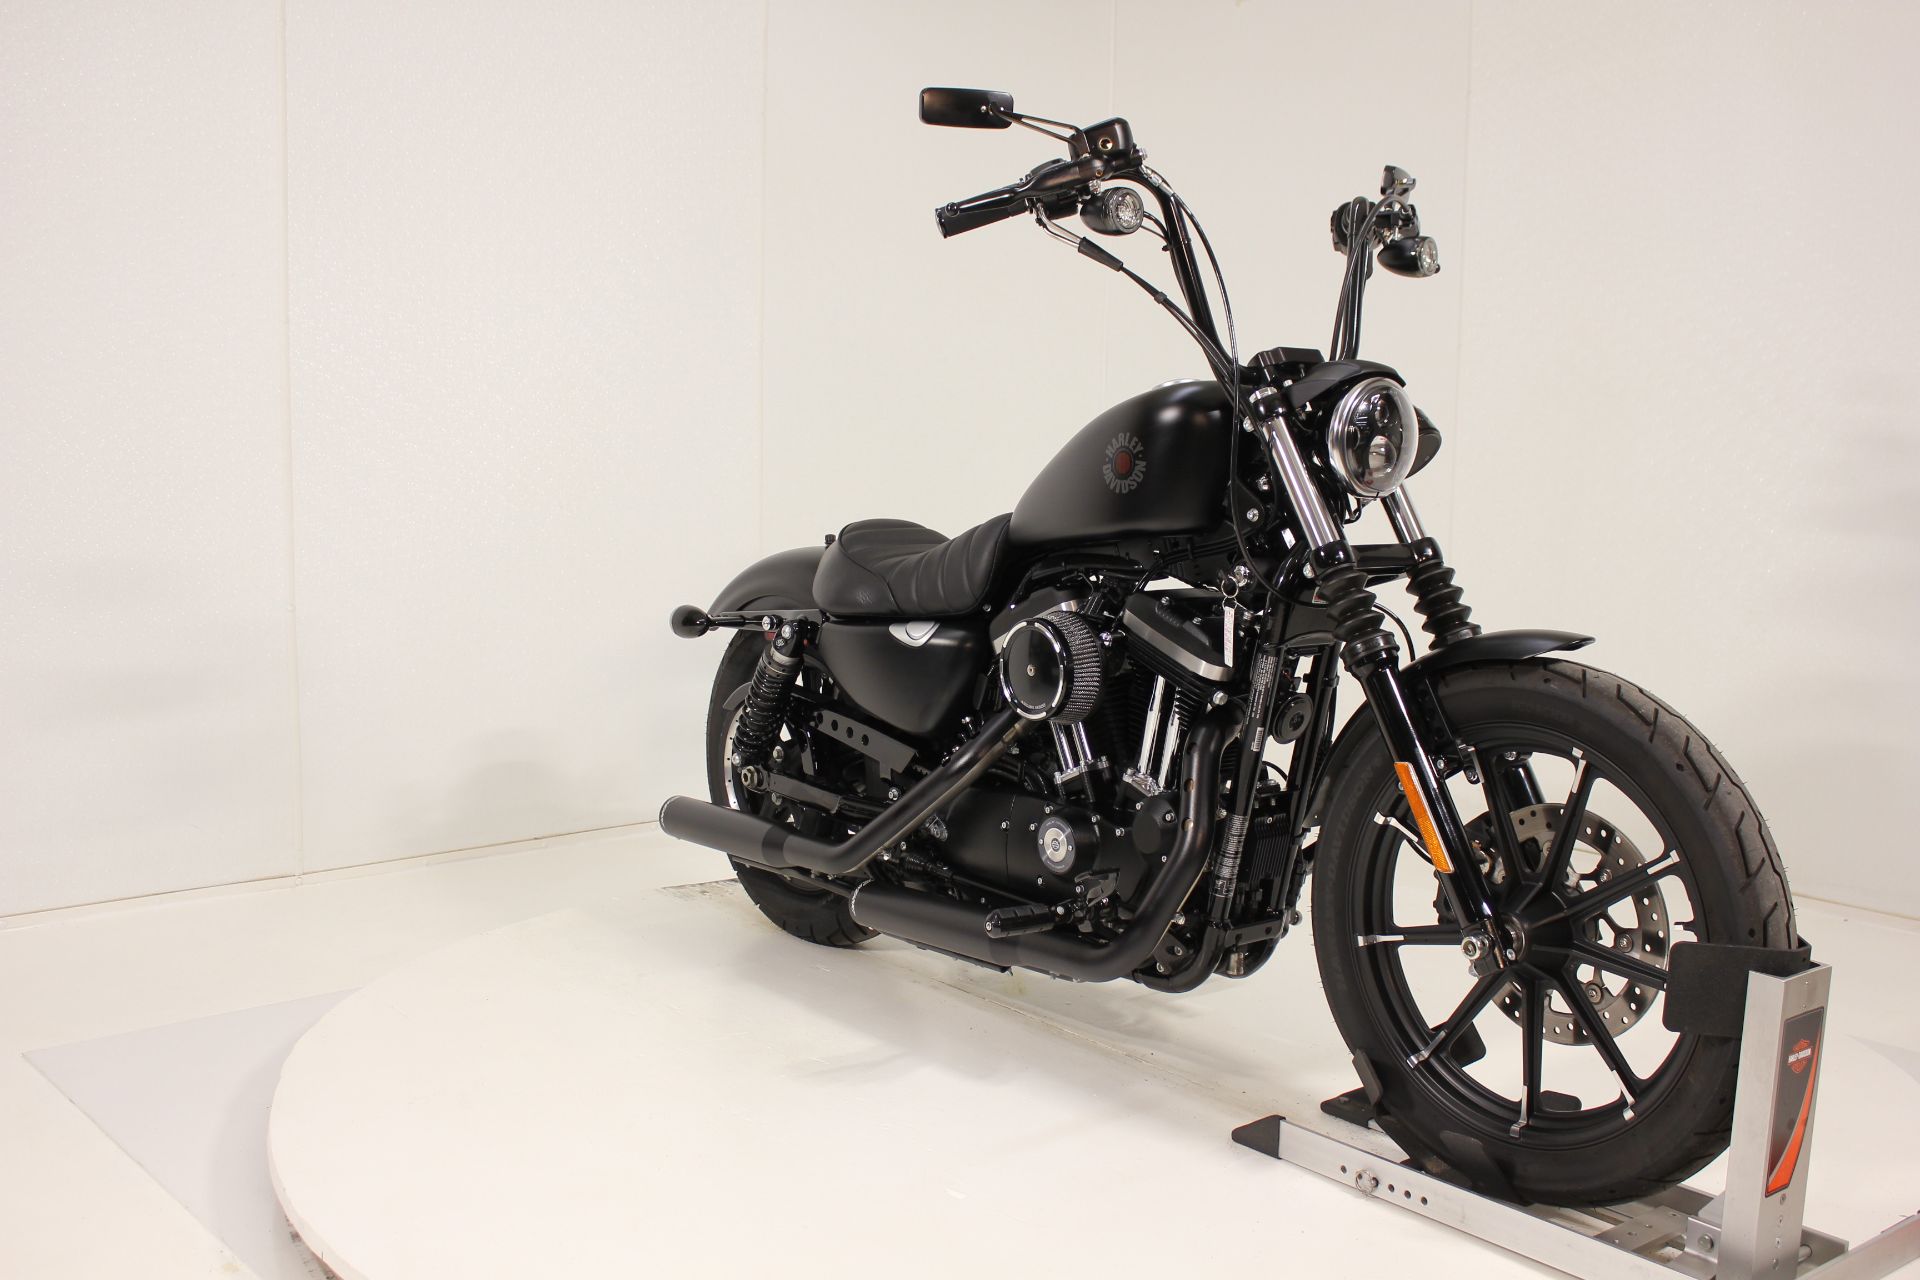 2022 Harley-Davidson Iron 883™ in Pittsfield, Massachusetts - Photo 6